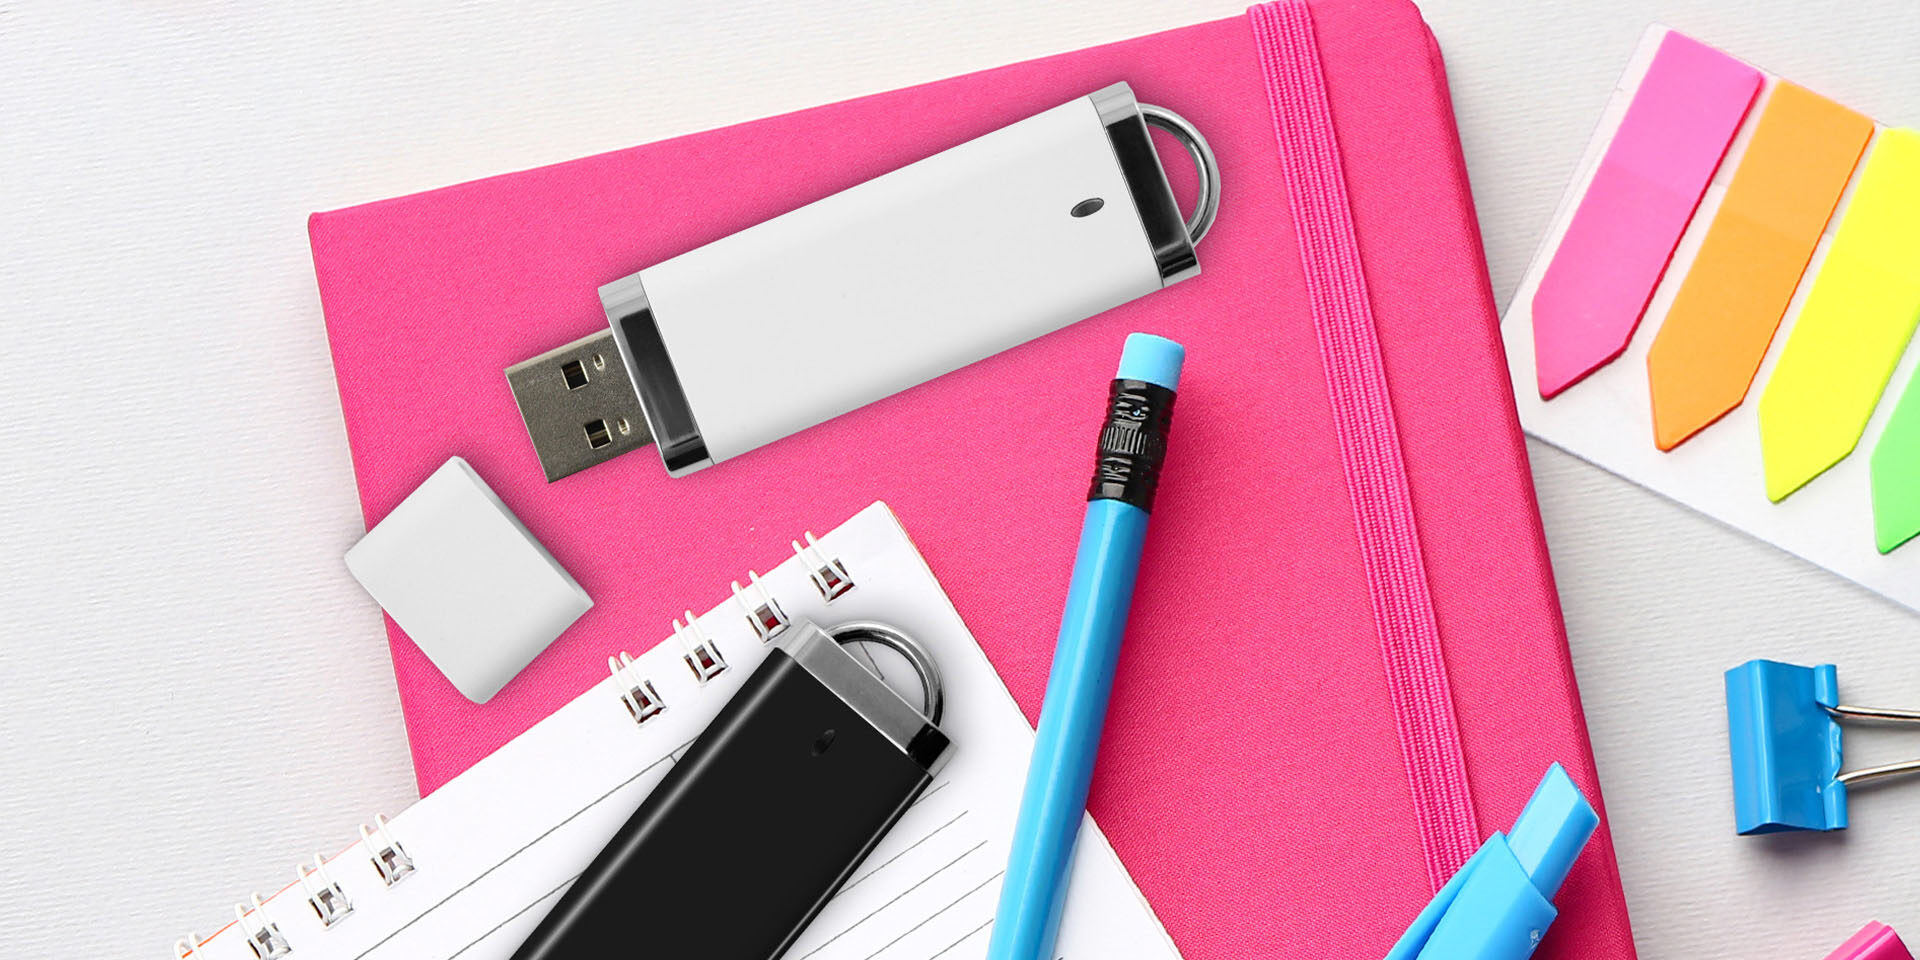 USB UBU marki Goodram leżące na notatnikach razem z artykułami biurowymi